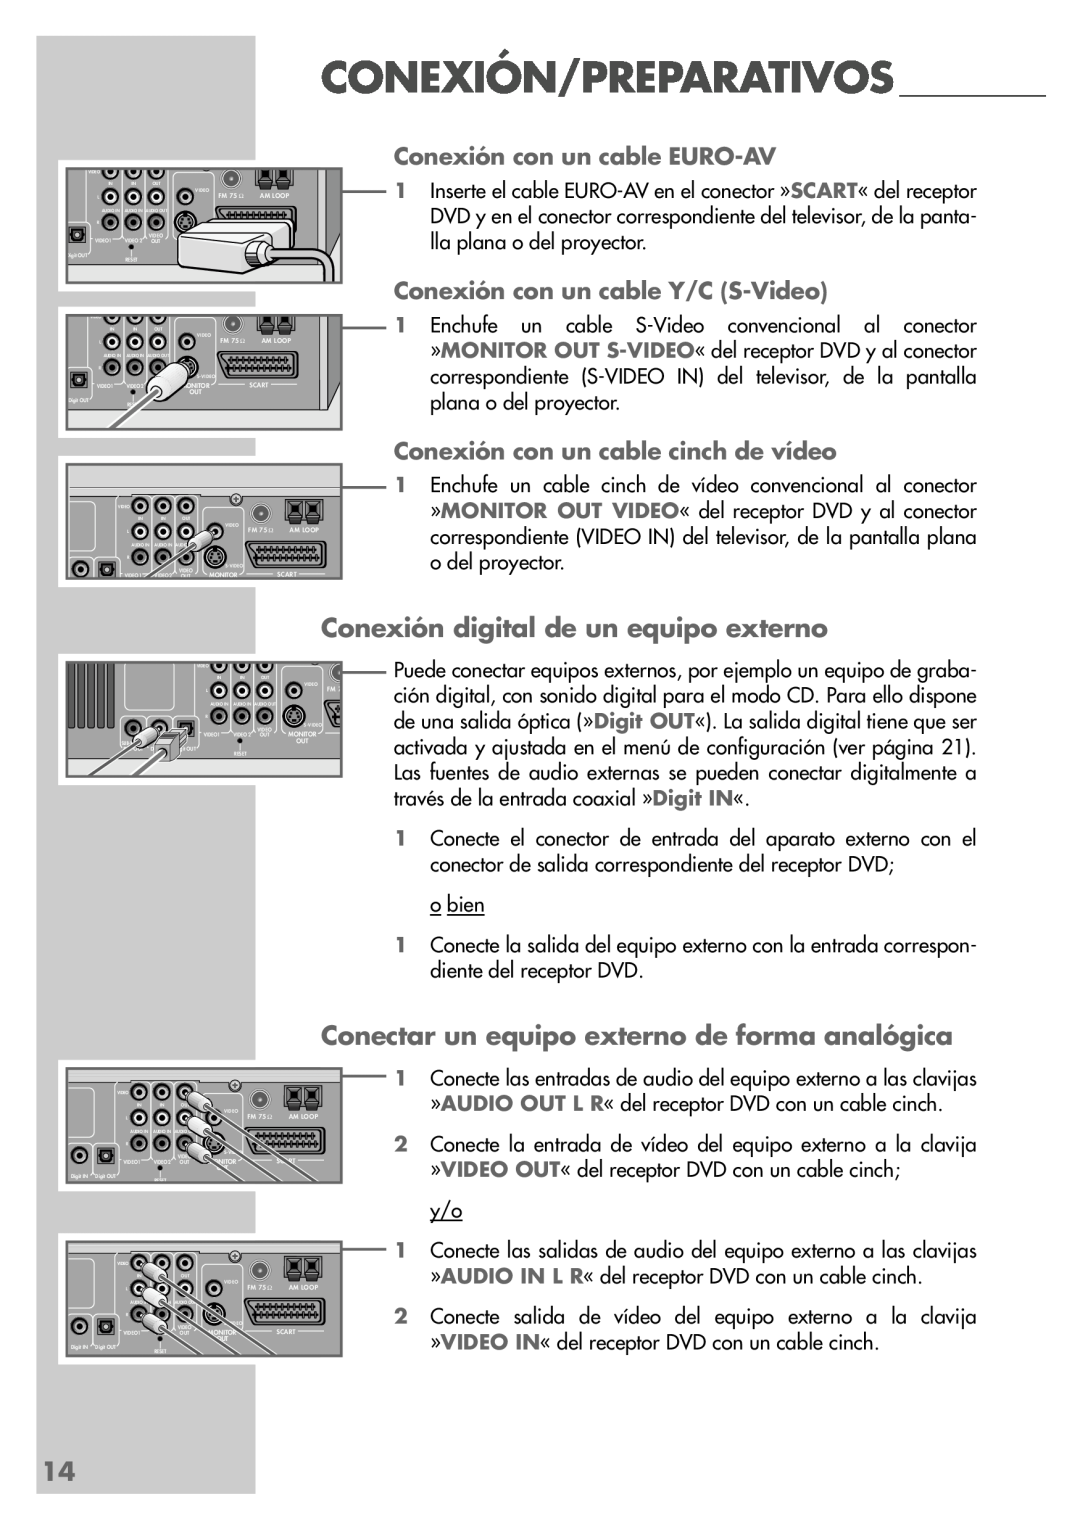 Grundig DR 5400 DD manual Conexión digital de un equipo externo, Conectar un equipo externo de forma analógica 